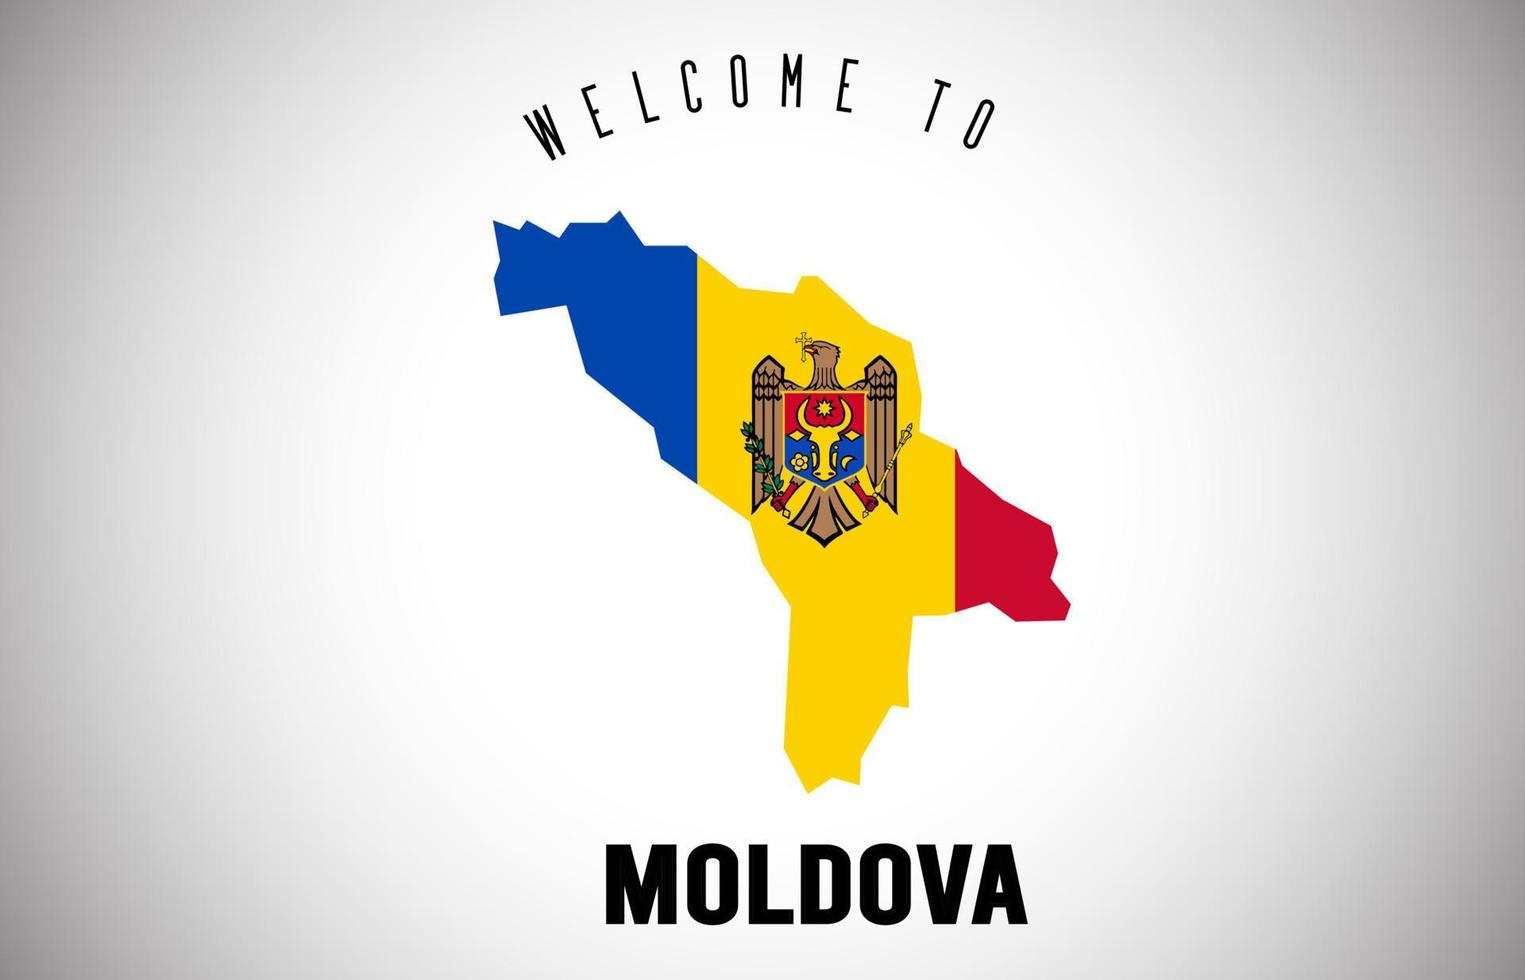 Moldavia benvenuto al testo e alla bandiera del paese all'interno del disegno vettoriale della mappa del confine del paese.